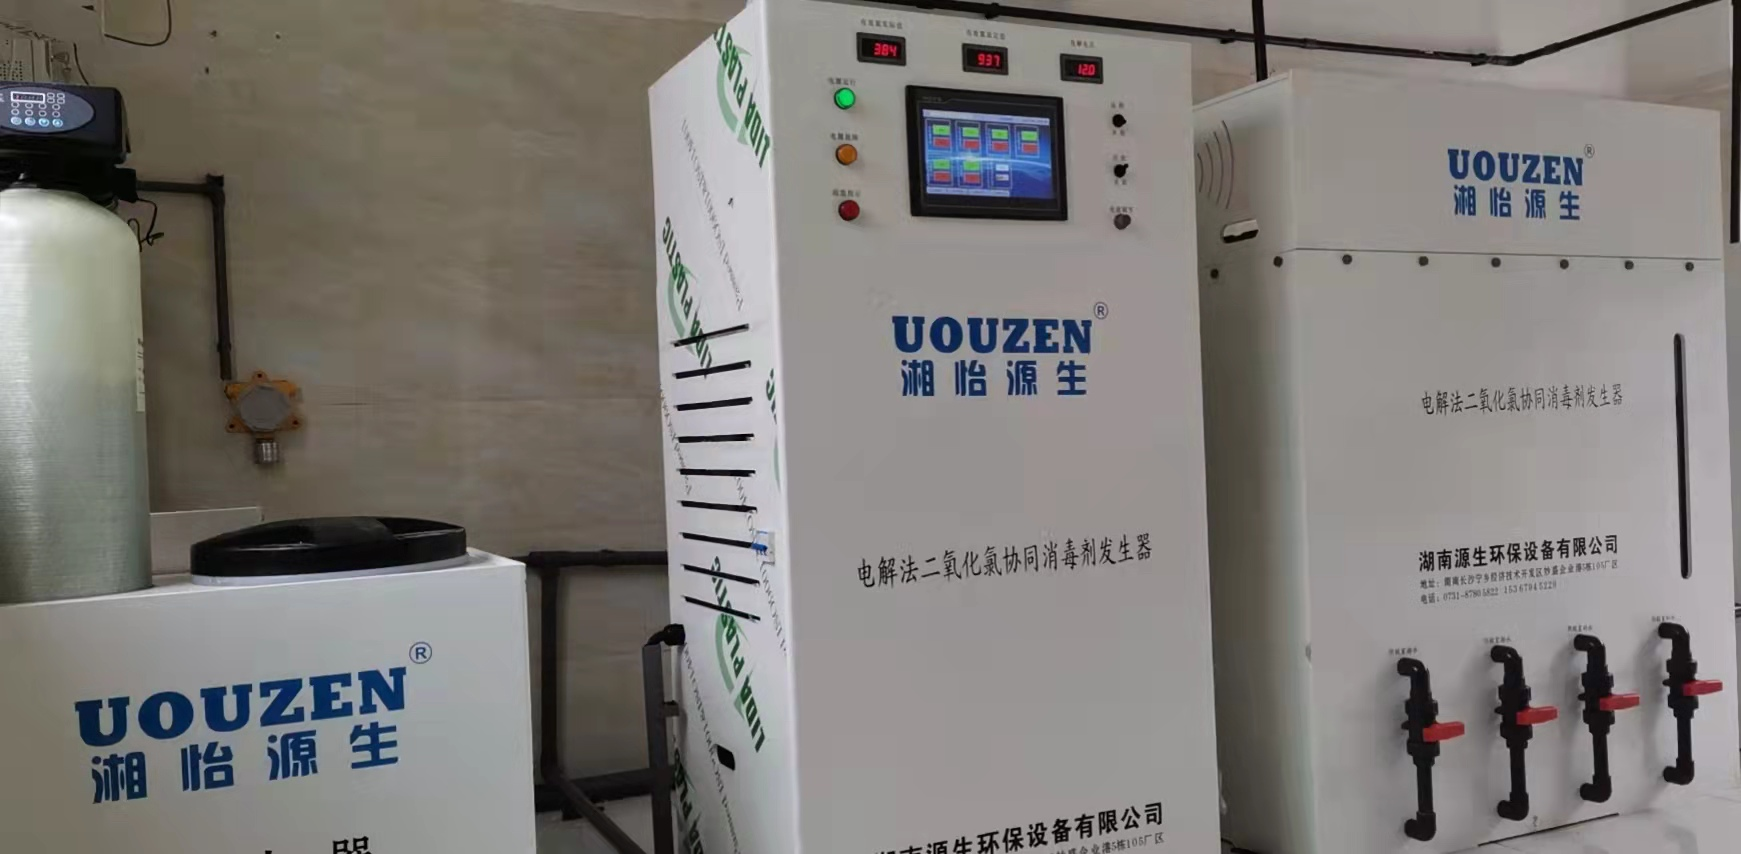 源生智能电解二氧化氯发生器再次服务北京